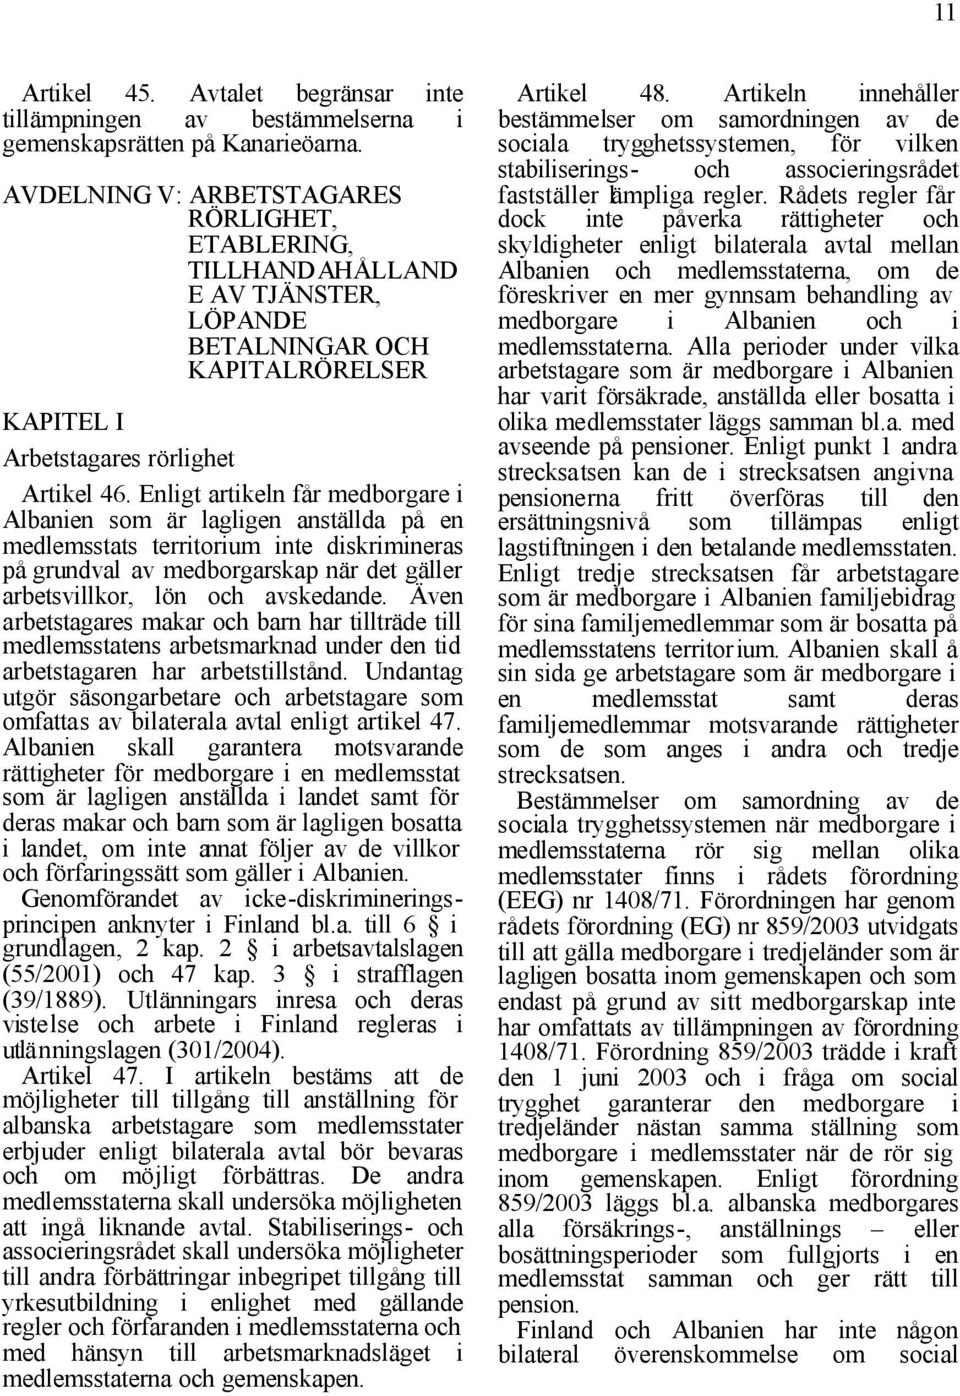 Enligt artikeln får medborgare i Albanien som är lagligen anställda på en medlemsstats territorium inte diskrimineras på grundval av medborgarskap när det gäller arbetsvillkor, lön och avskedande.